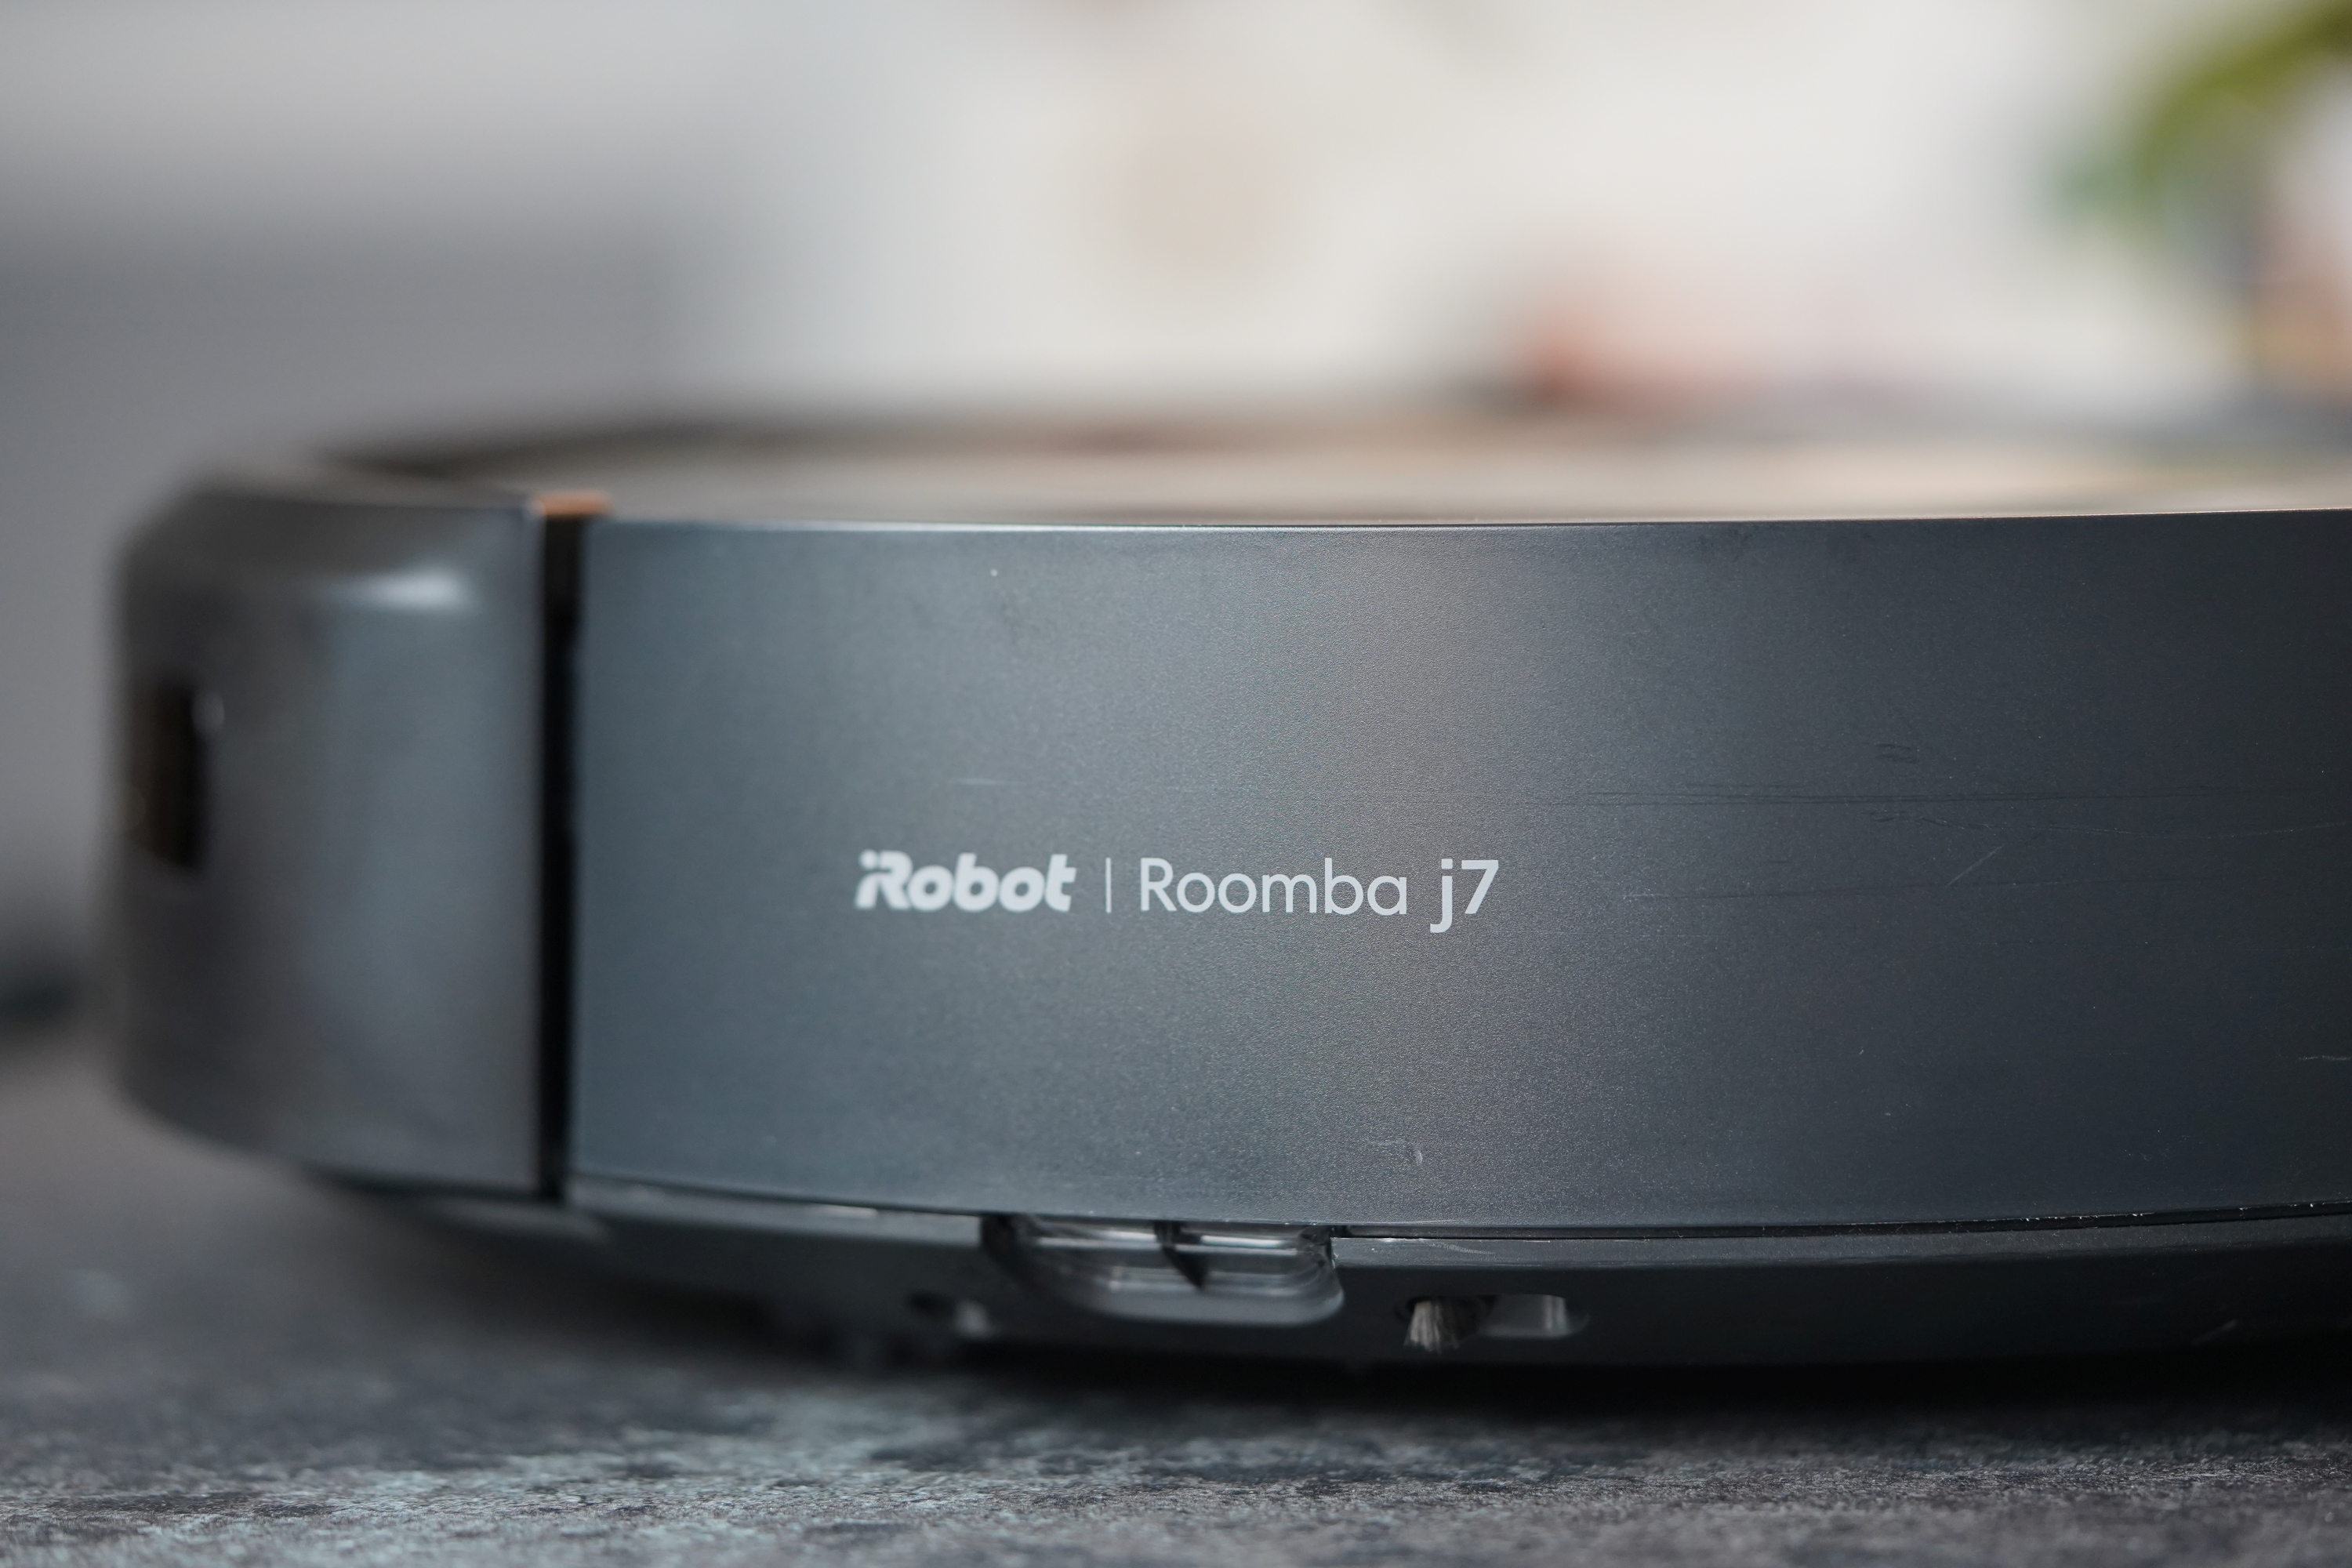 Roomba nagrywa i udostępnia zdjęcia użytkowników bez ich wiedzy?